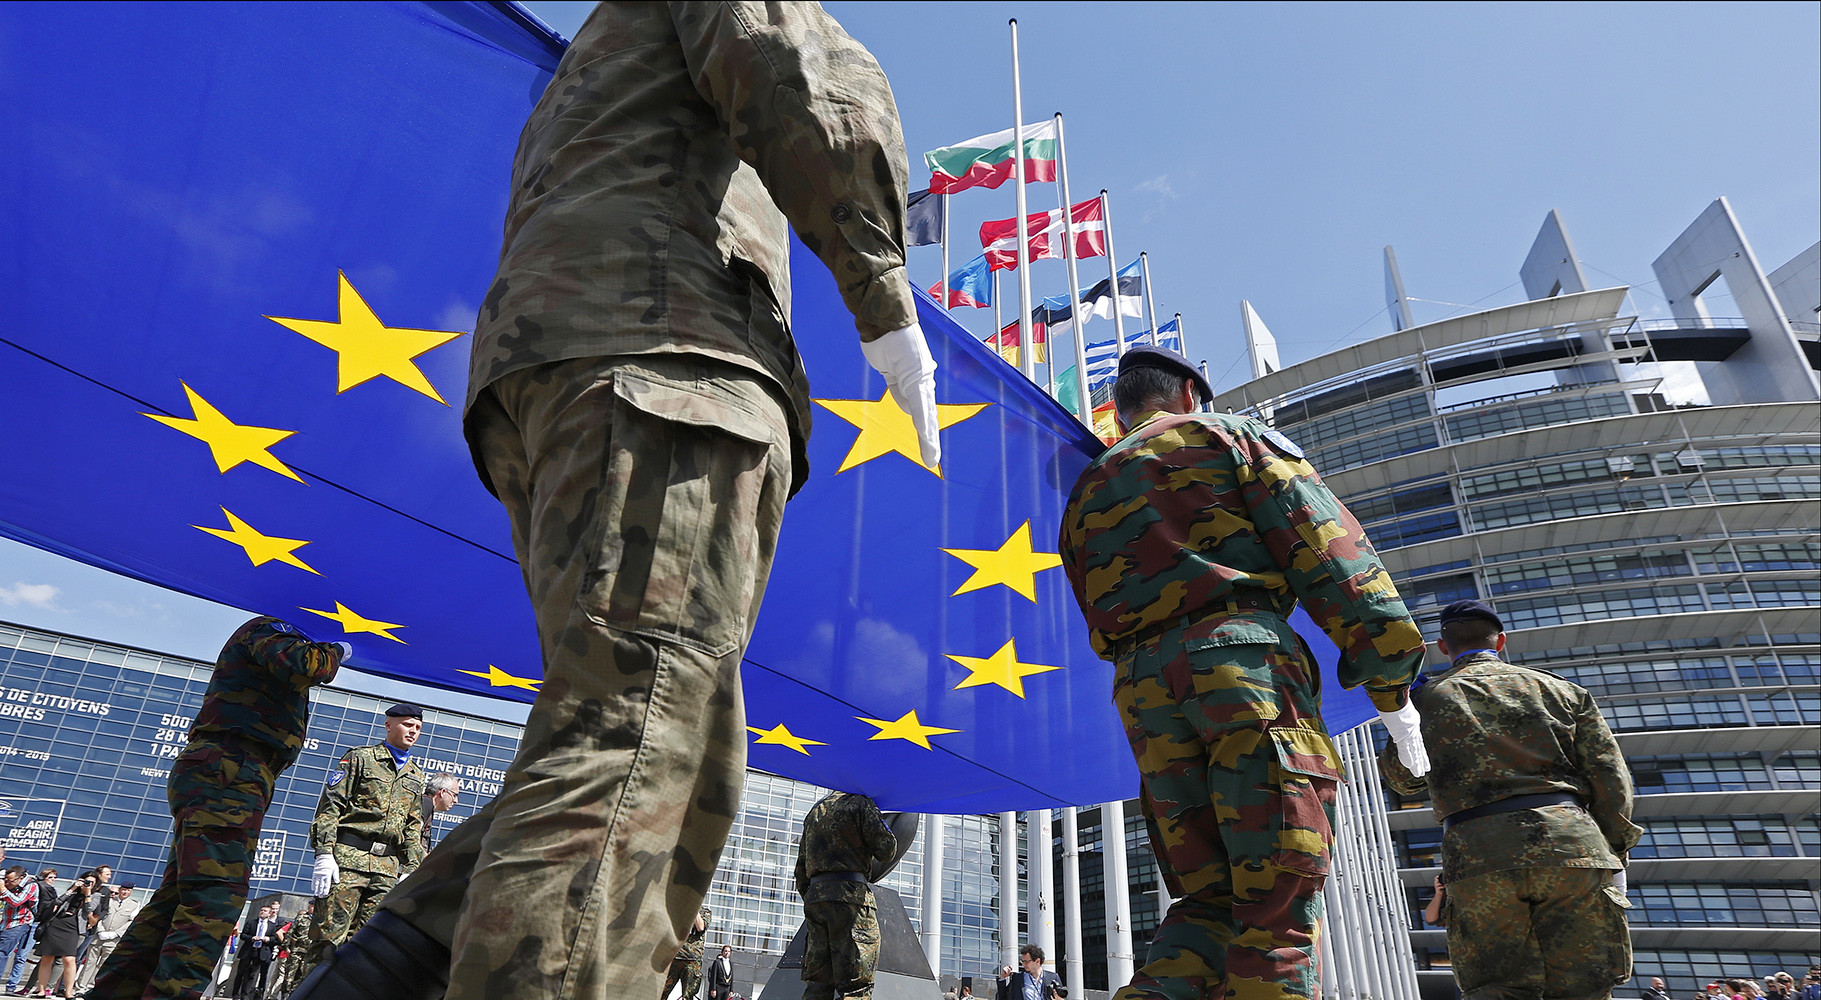 «Филиал НАТО в Европе»: каковы перспективы создания единой армии ЕС